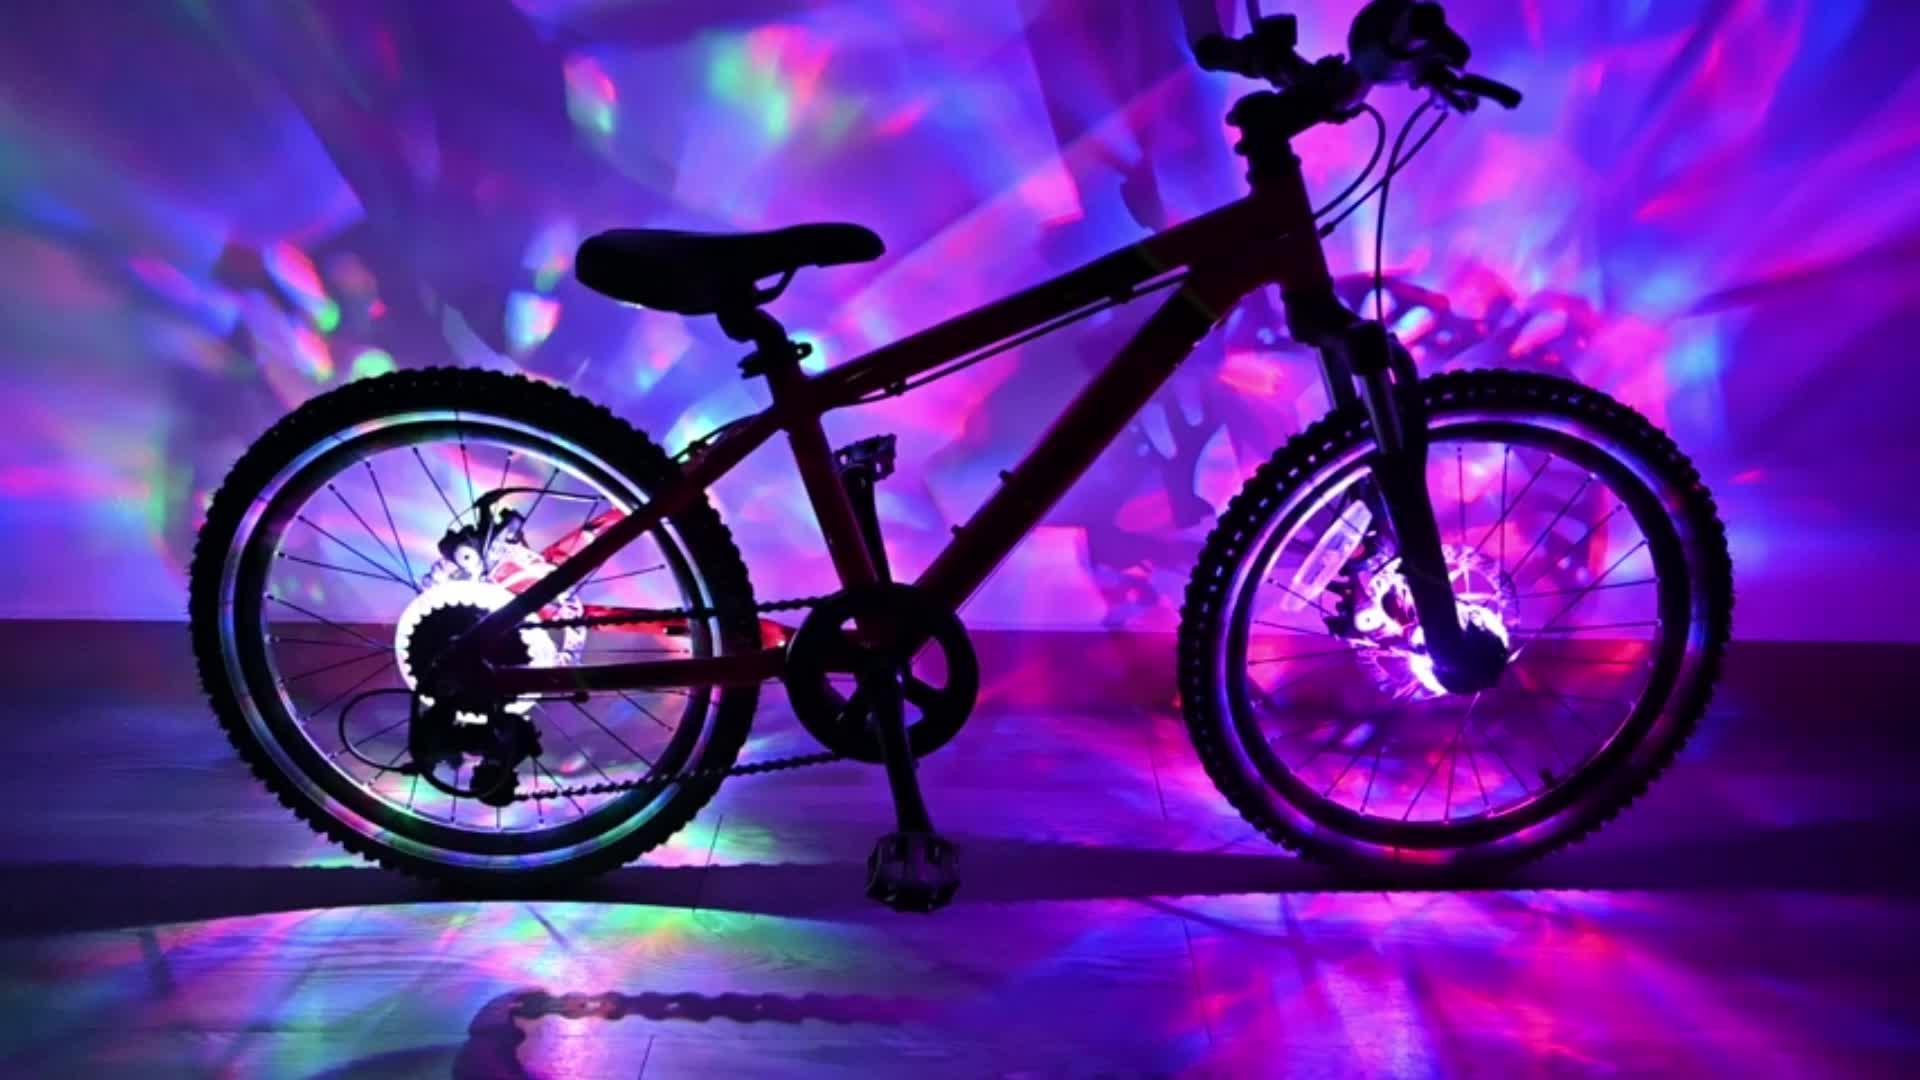 Lumières rechargeables de moyeu de roue de vélo Lumières de rayons  aquarelle imperméables à l'eau pour la sécurité des vélos, lumière de décoration  pour enfants